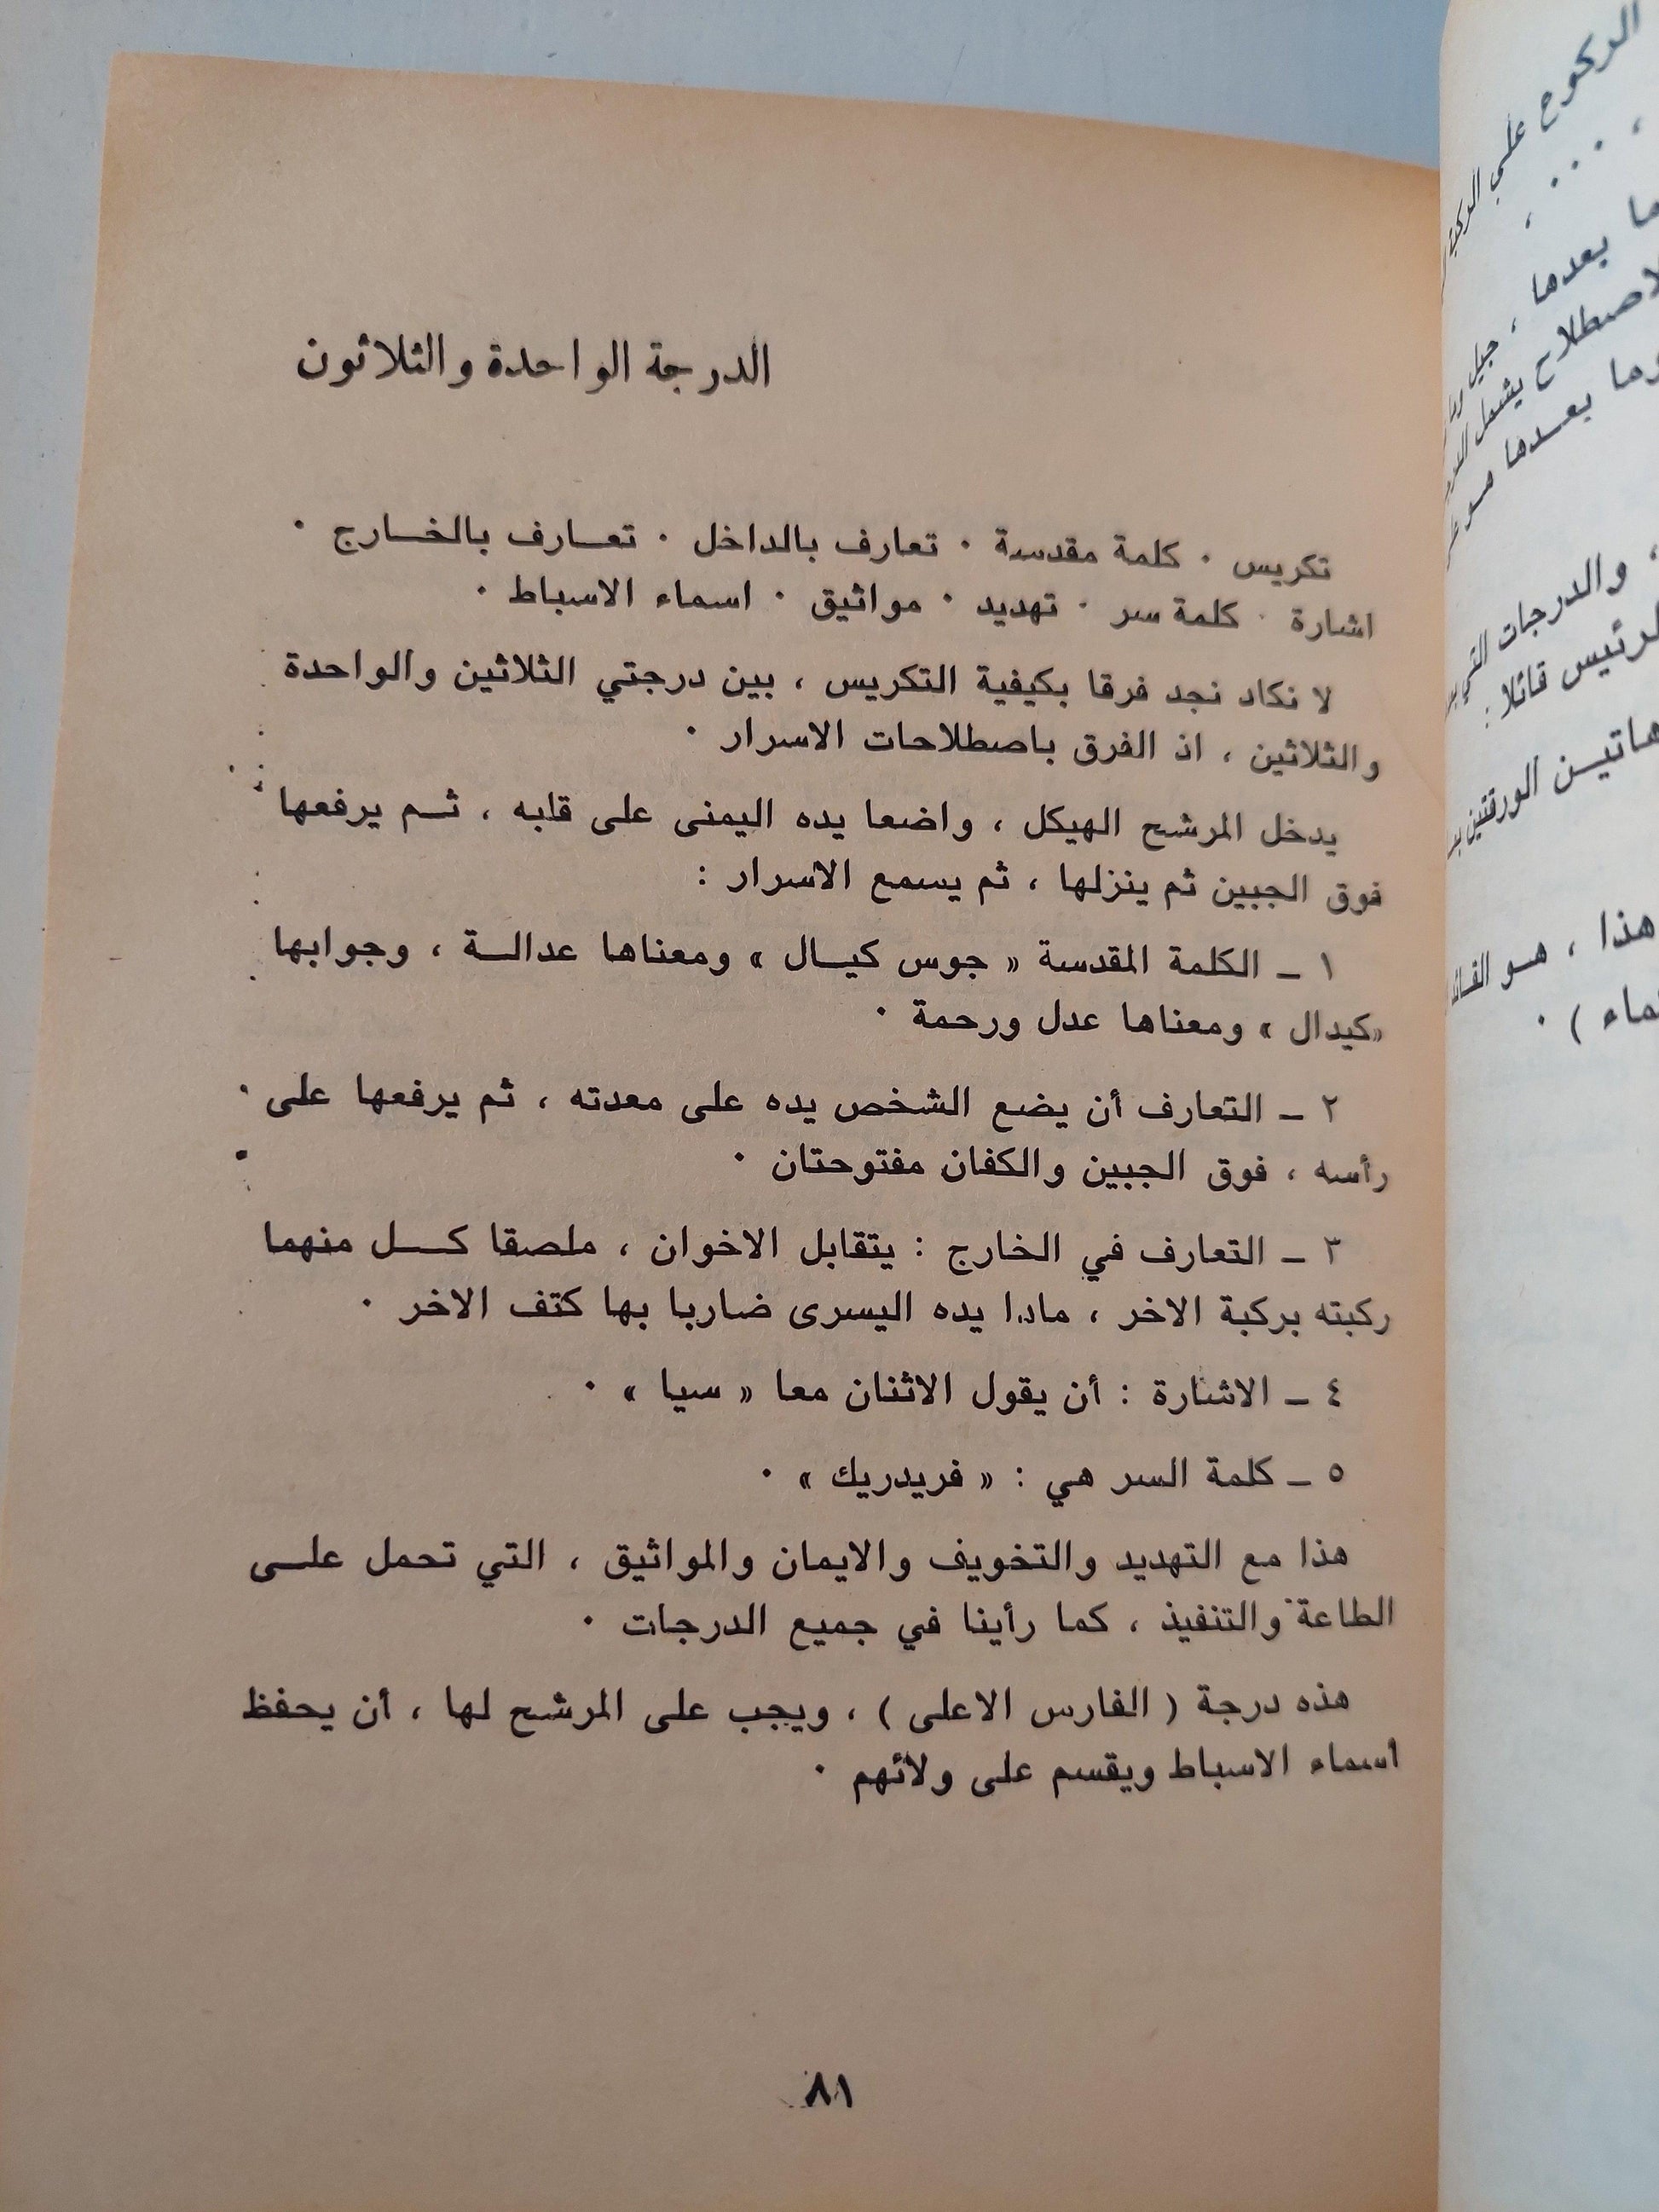 الماسونية في العراء / د. محمد علي الزعبي - متجر كتب مصر